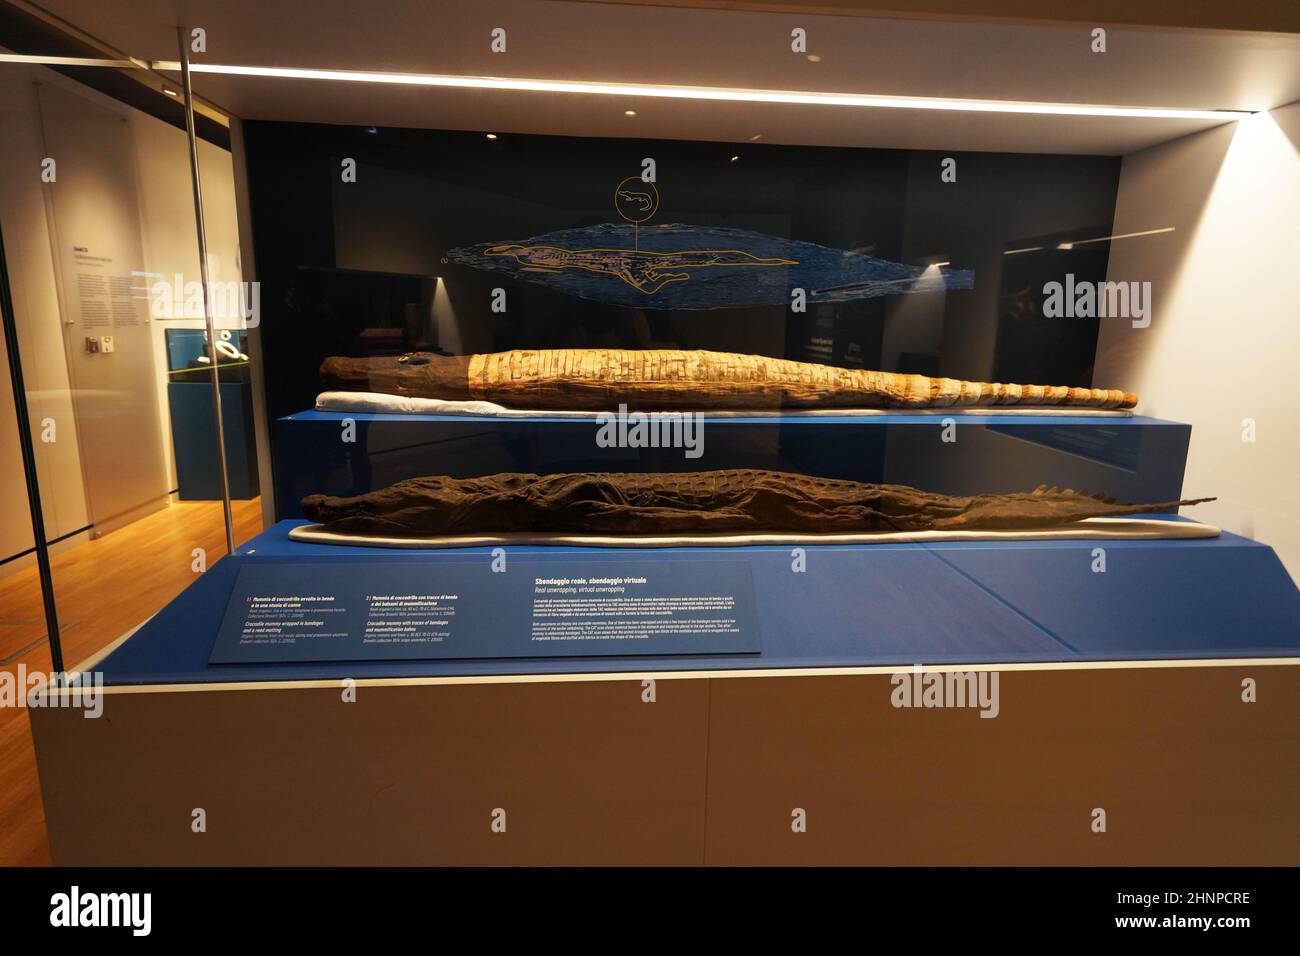 TURIN, ITALIE - 19 AOÛT 2021 : momie crocodile.Momification du crocodile pendant la civilisation égyptienne, Musée égyptien de Turin, Italie Banque D'Images